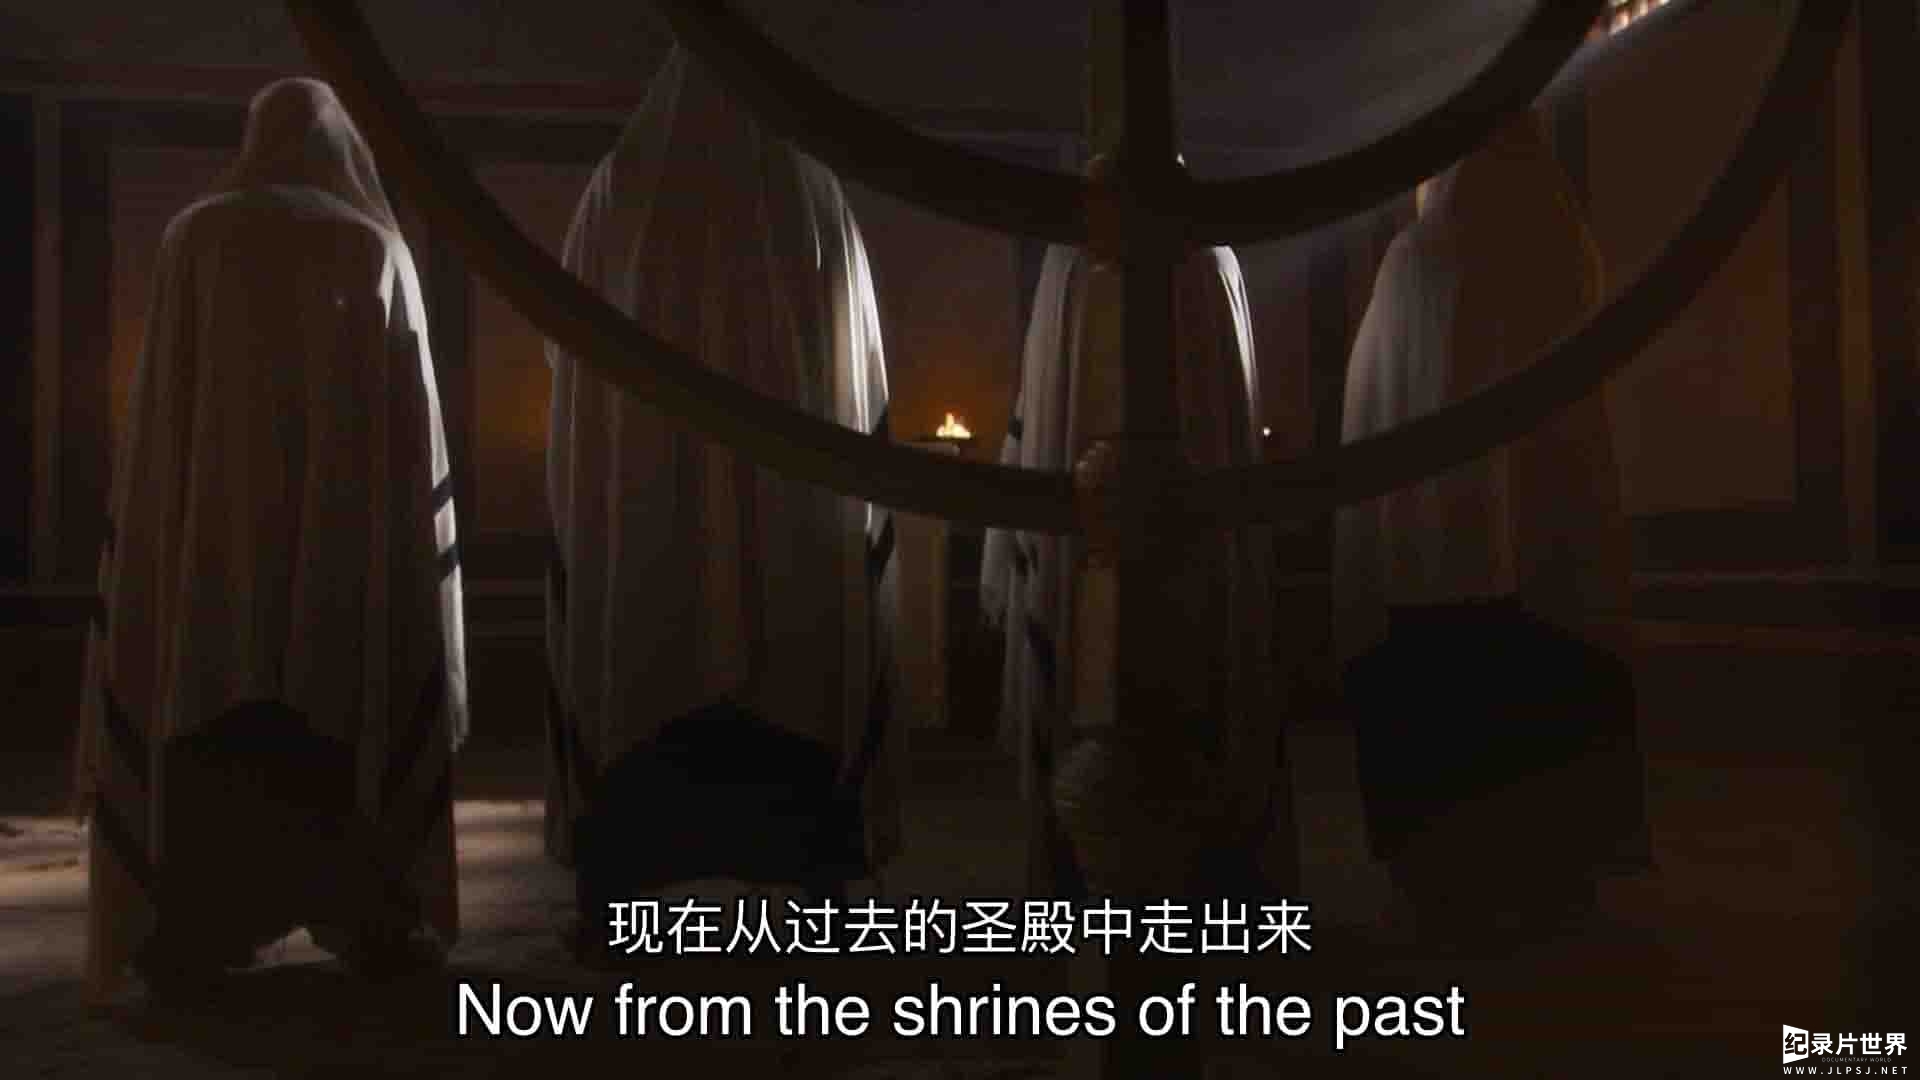 加拿大纪录片《圣殿山 The Temple Mount 2012》第1季